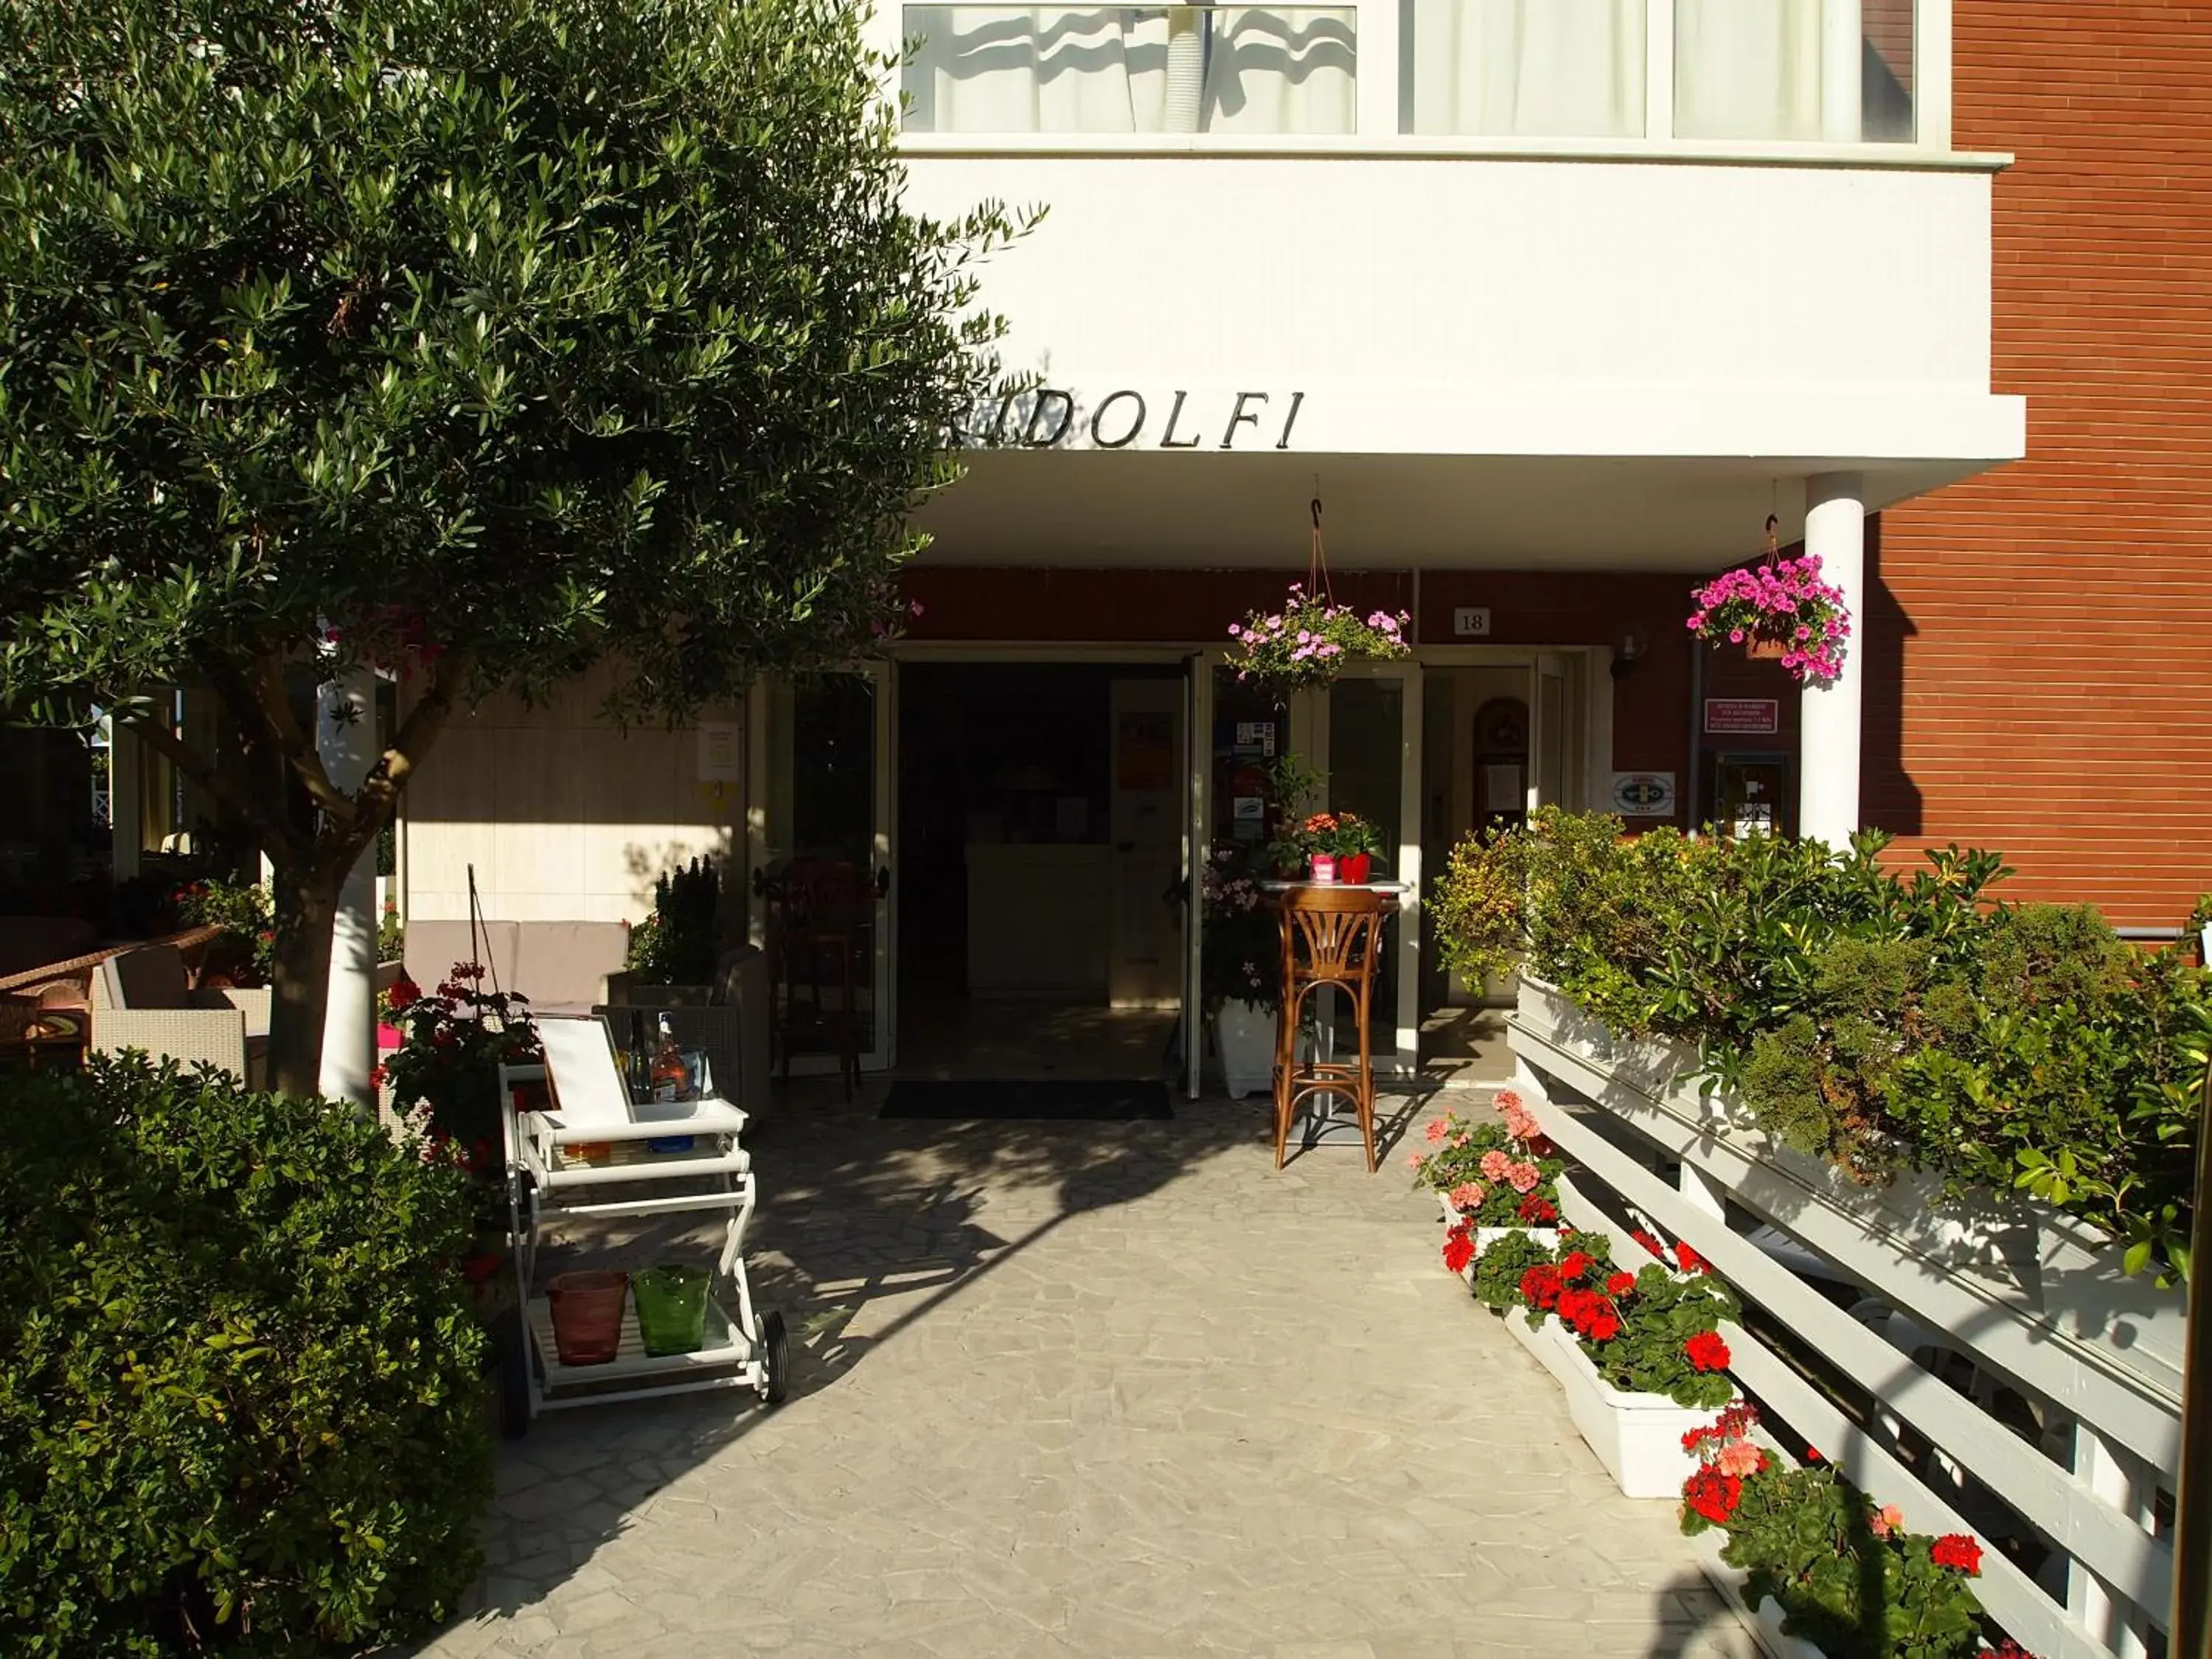 Facade/entrance in Hotel Ridolfi